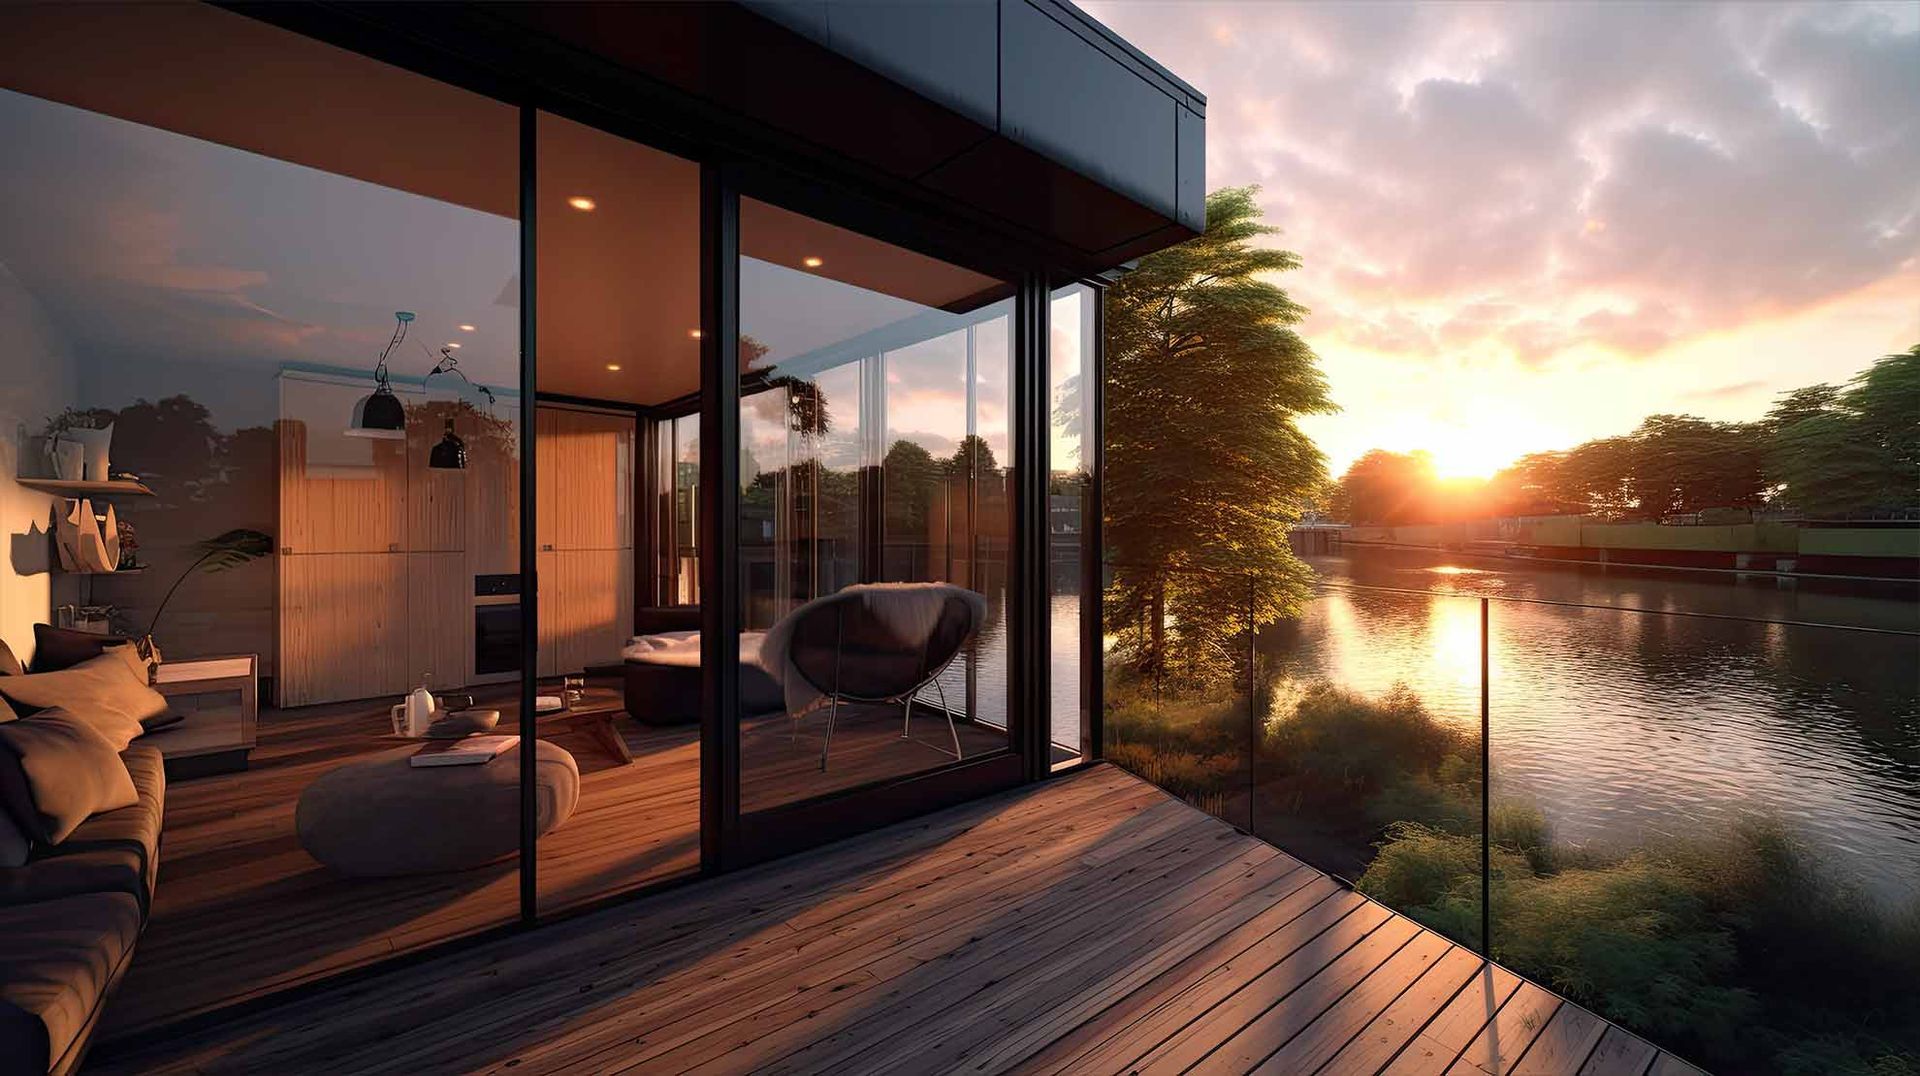 Künstlerische Darstellung eines modernen Hauses mit Blick auf einen See bei Sonnenuntergang.